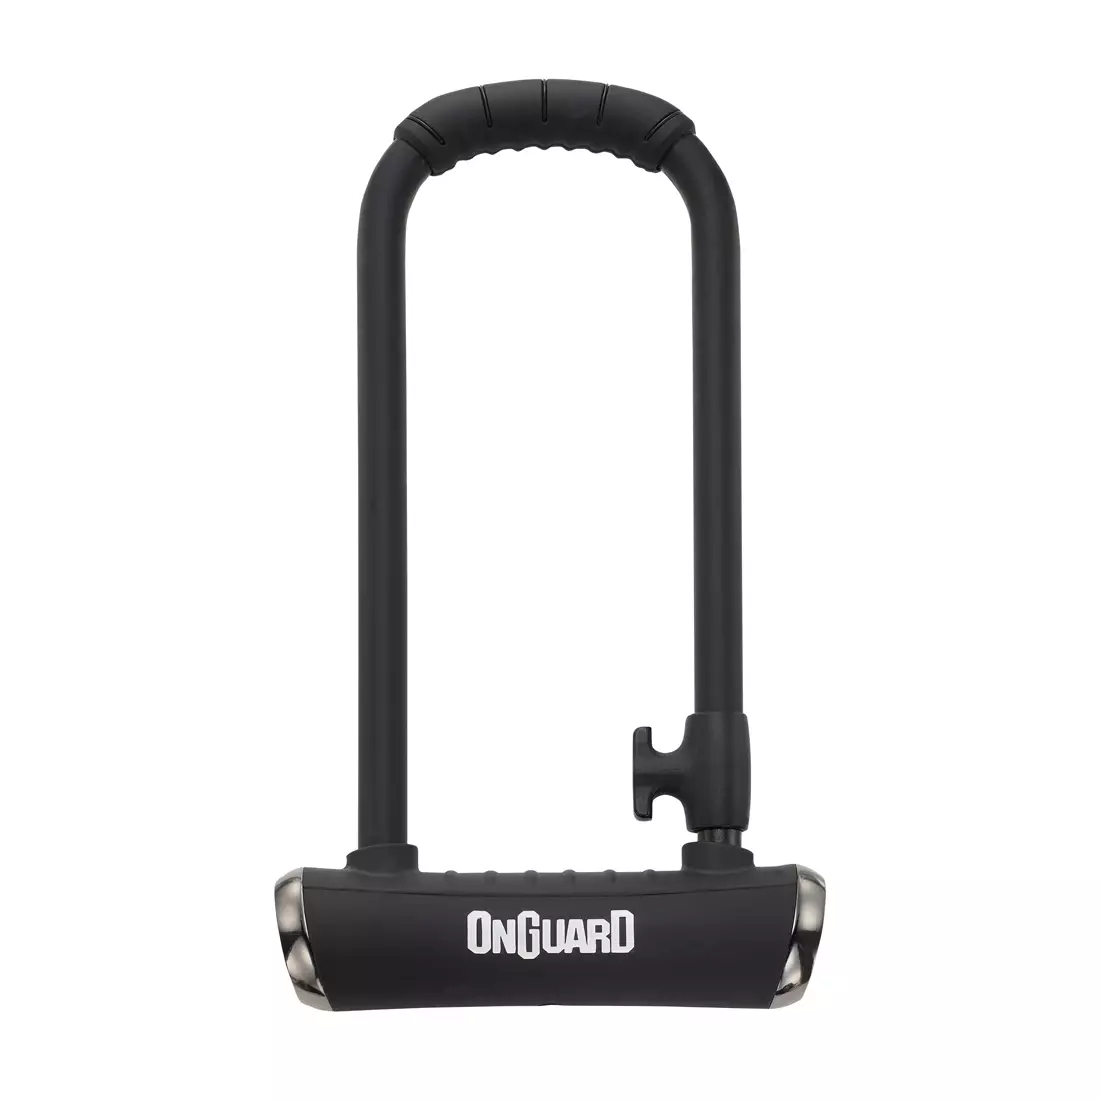 ONGUARD spona na bicykel pitbull mini ls x-series u-lock 14mm 90mm 240mm + 5 x kľúče s kódom ONG-8007X